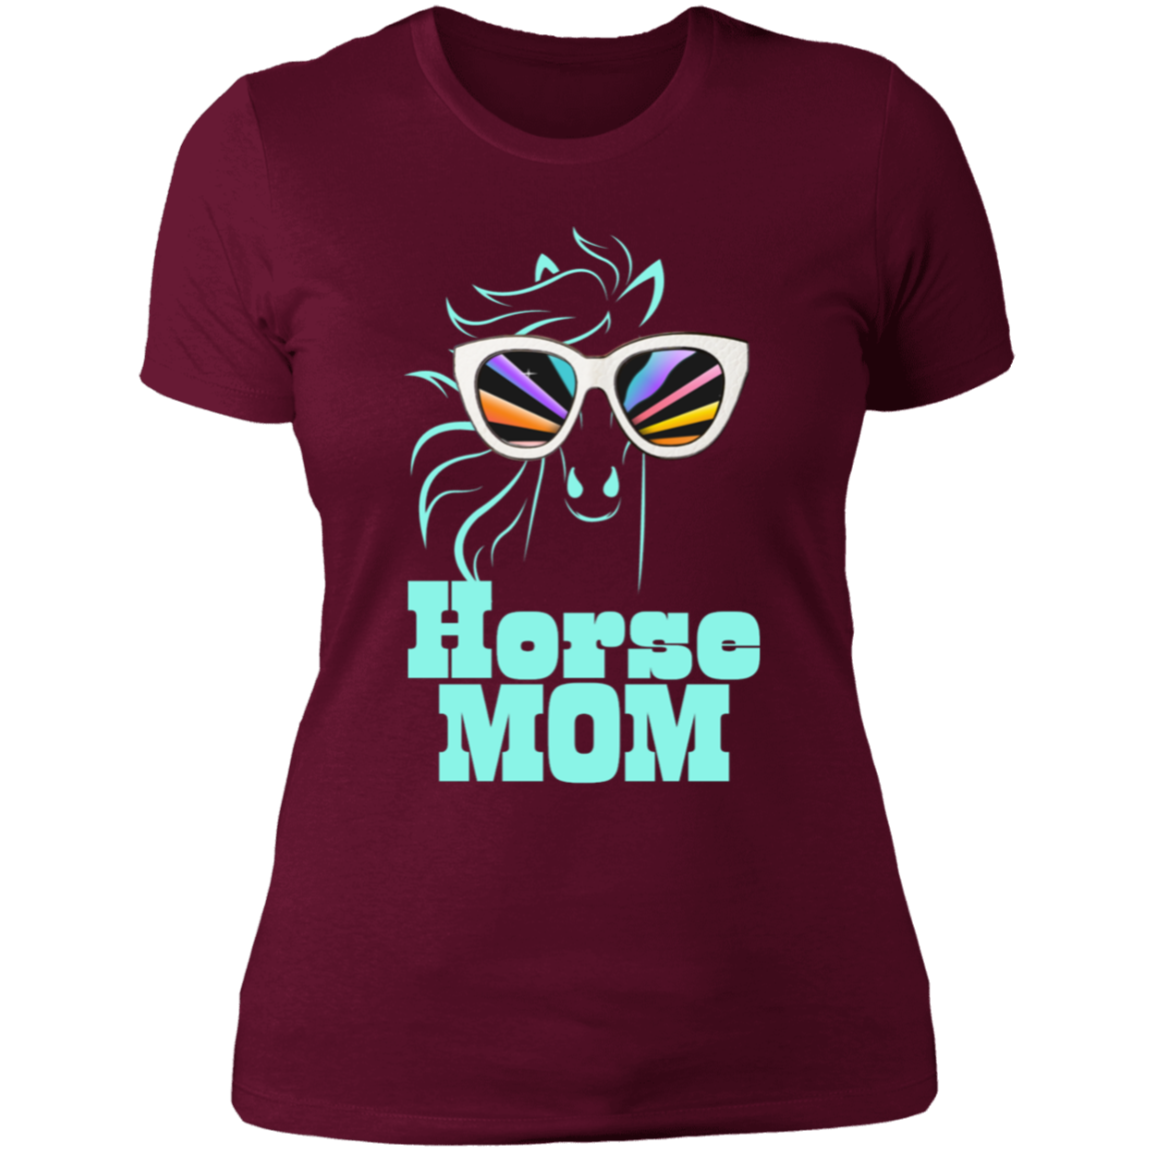 Horse Mom T-Shirt For Horse Loving Moms